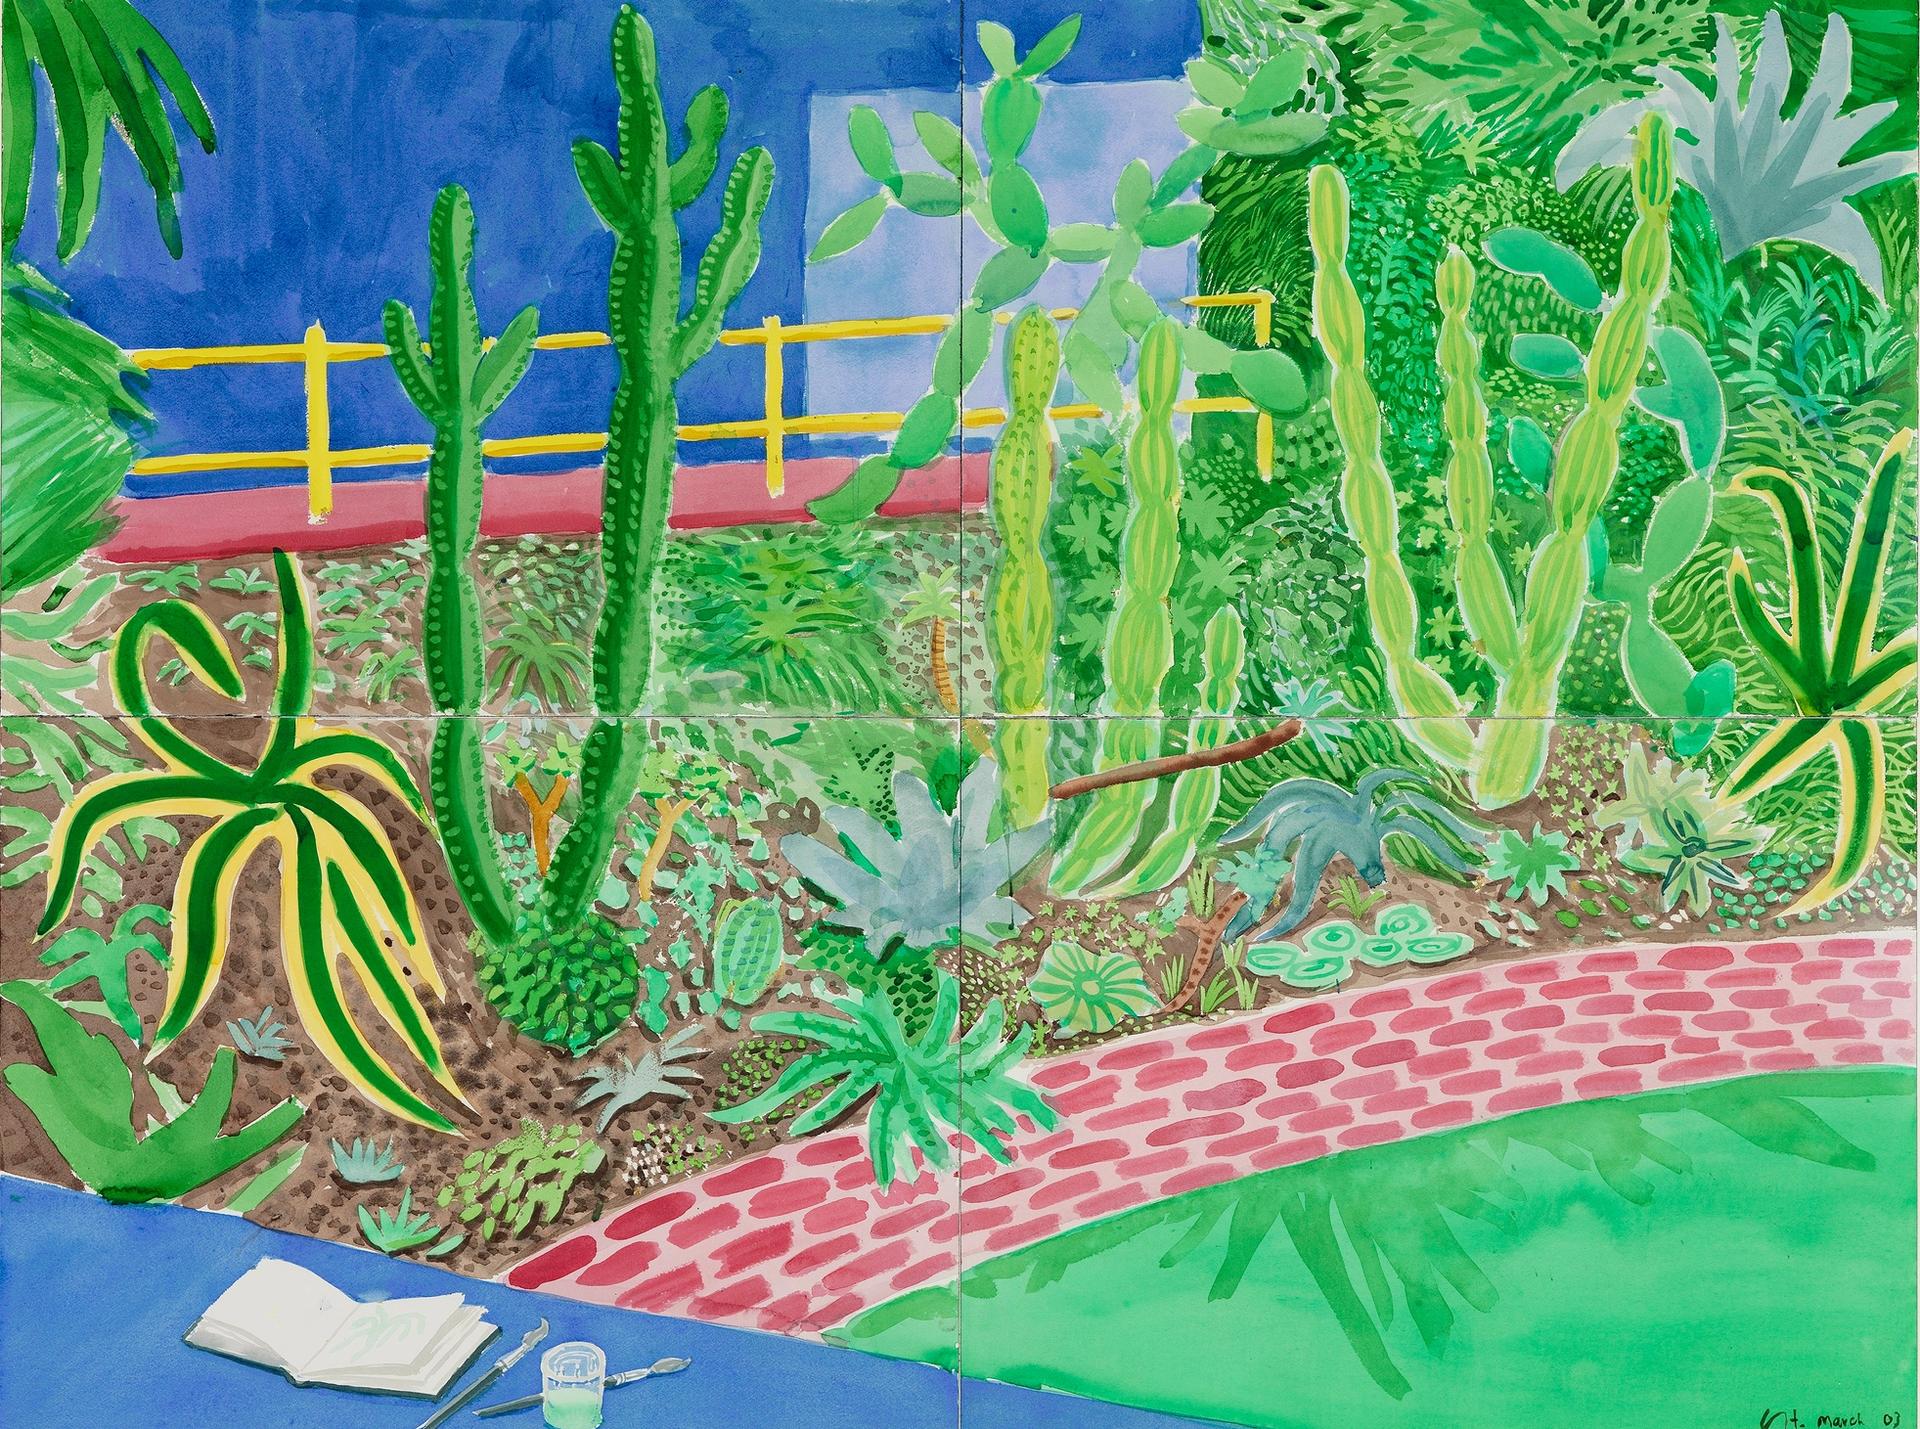 David Hockney, Cactus Garden III, 2003, aquarelle sur quatre feuilles de papier, 91,5 x 121,9 cm en tout. Collection de la David Hockney Foundation. © David Hockney. Photo : Richard Schmidt